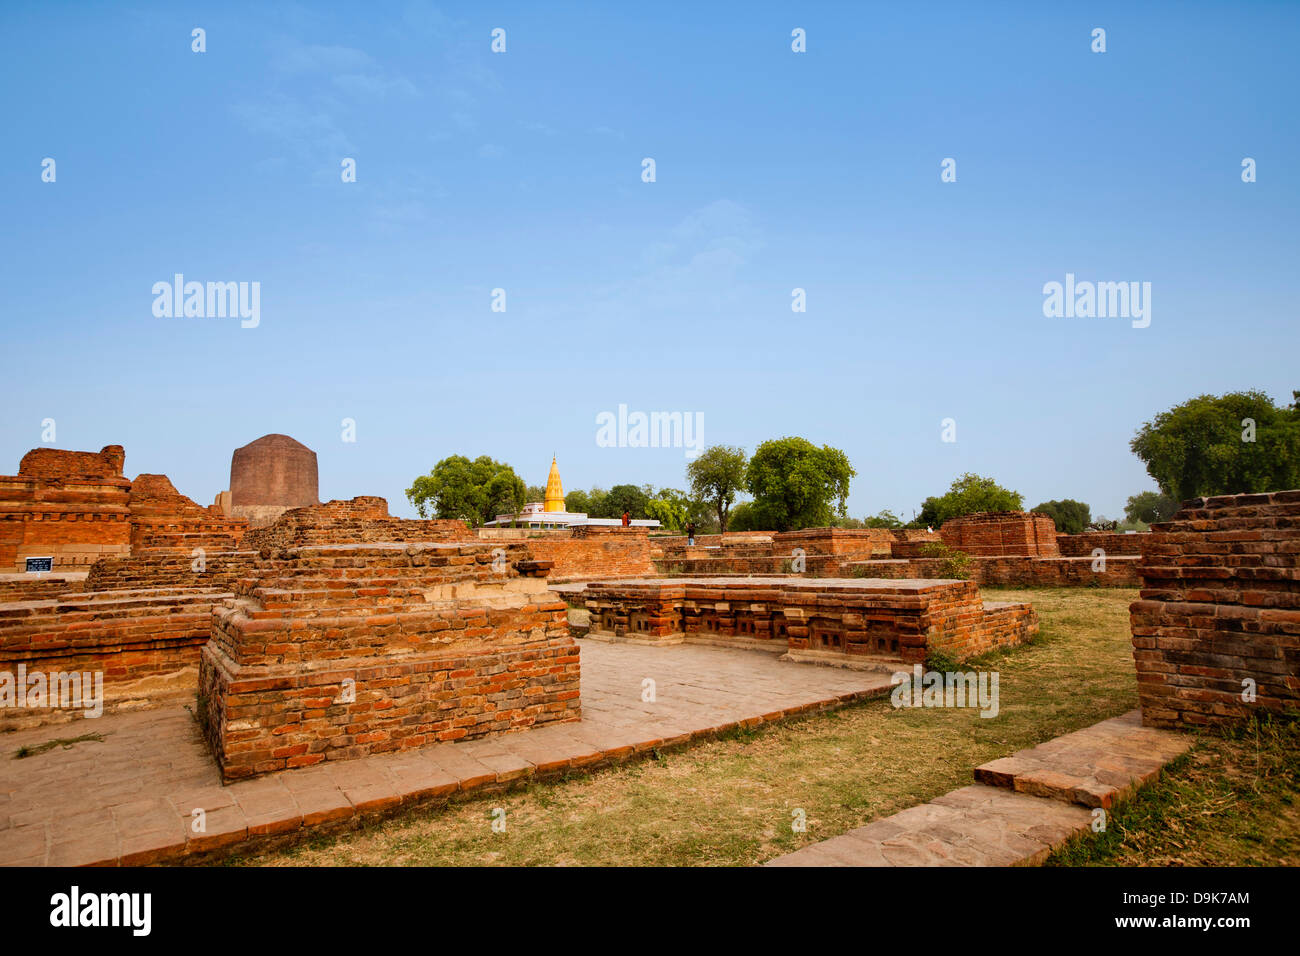 Ruins with stupa in background, Sarnath, Varanasi, Uttar Pradesh, India Stock Photo